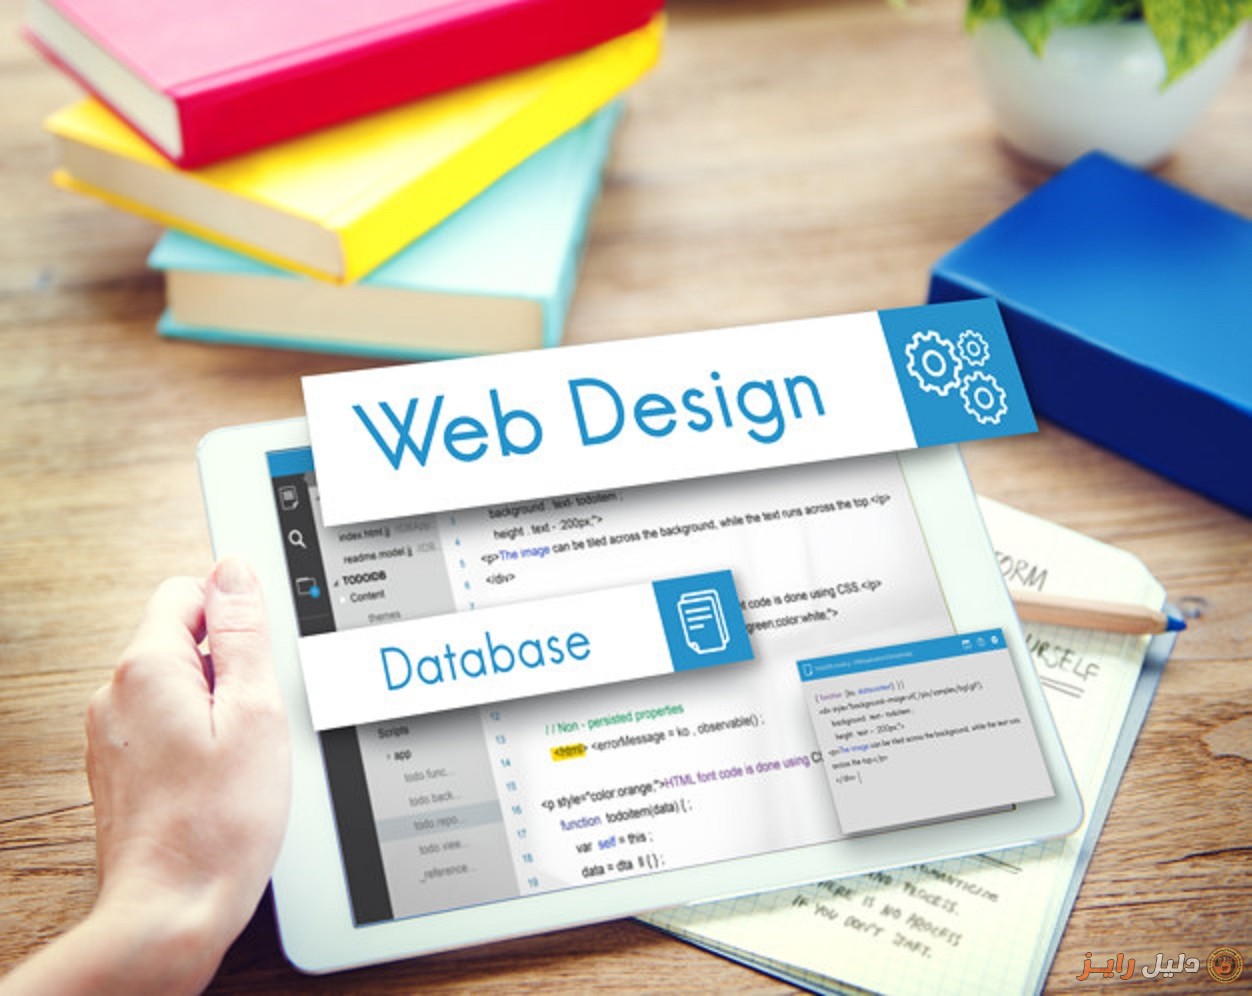 تصميم و تطوير مواقع الويب | تصميم مواقع ديناميك‎